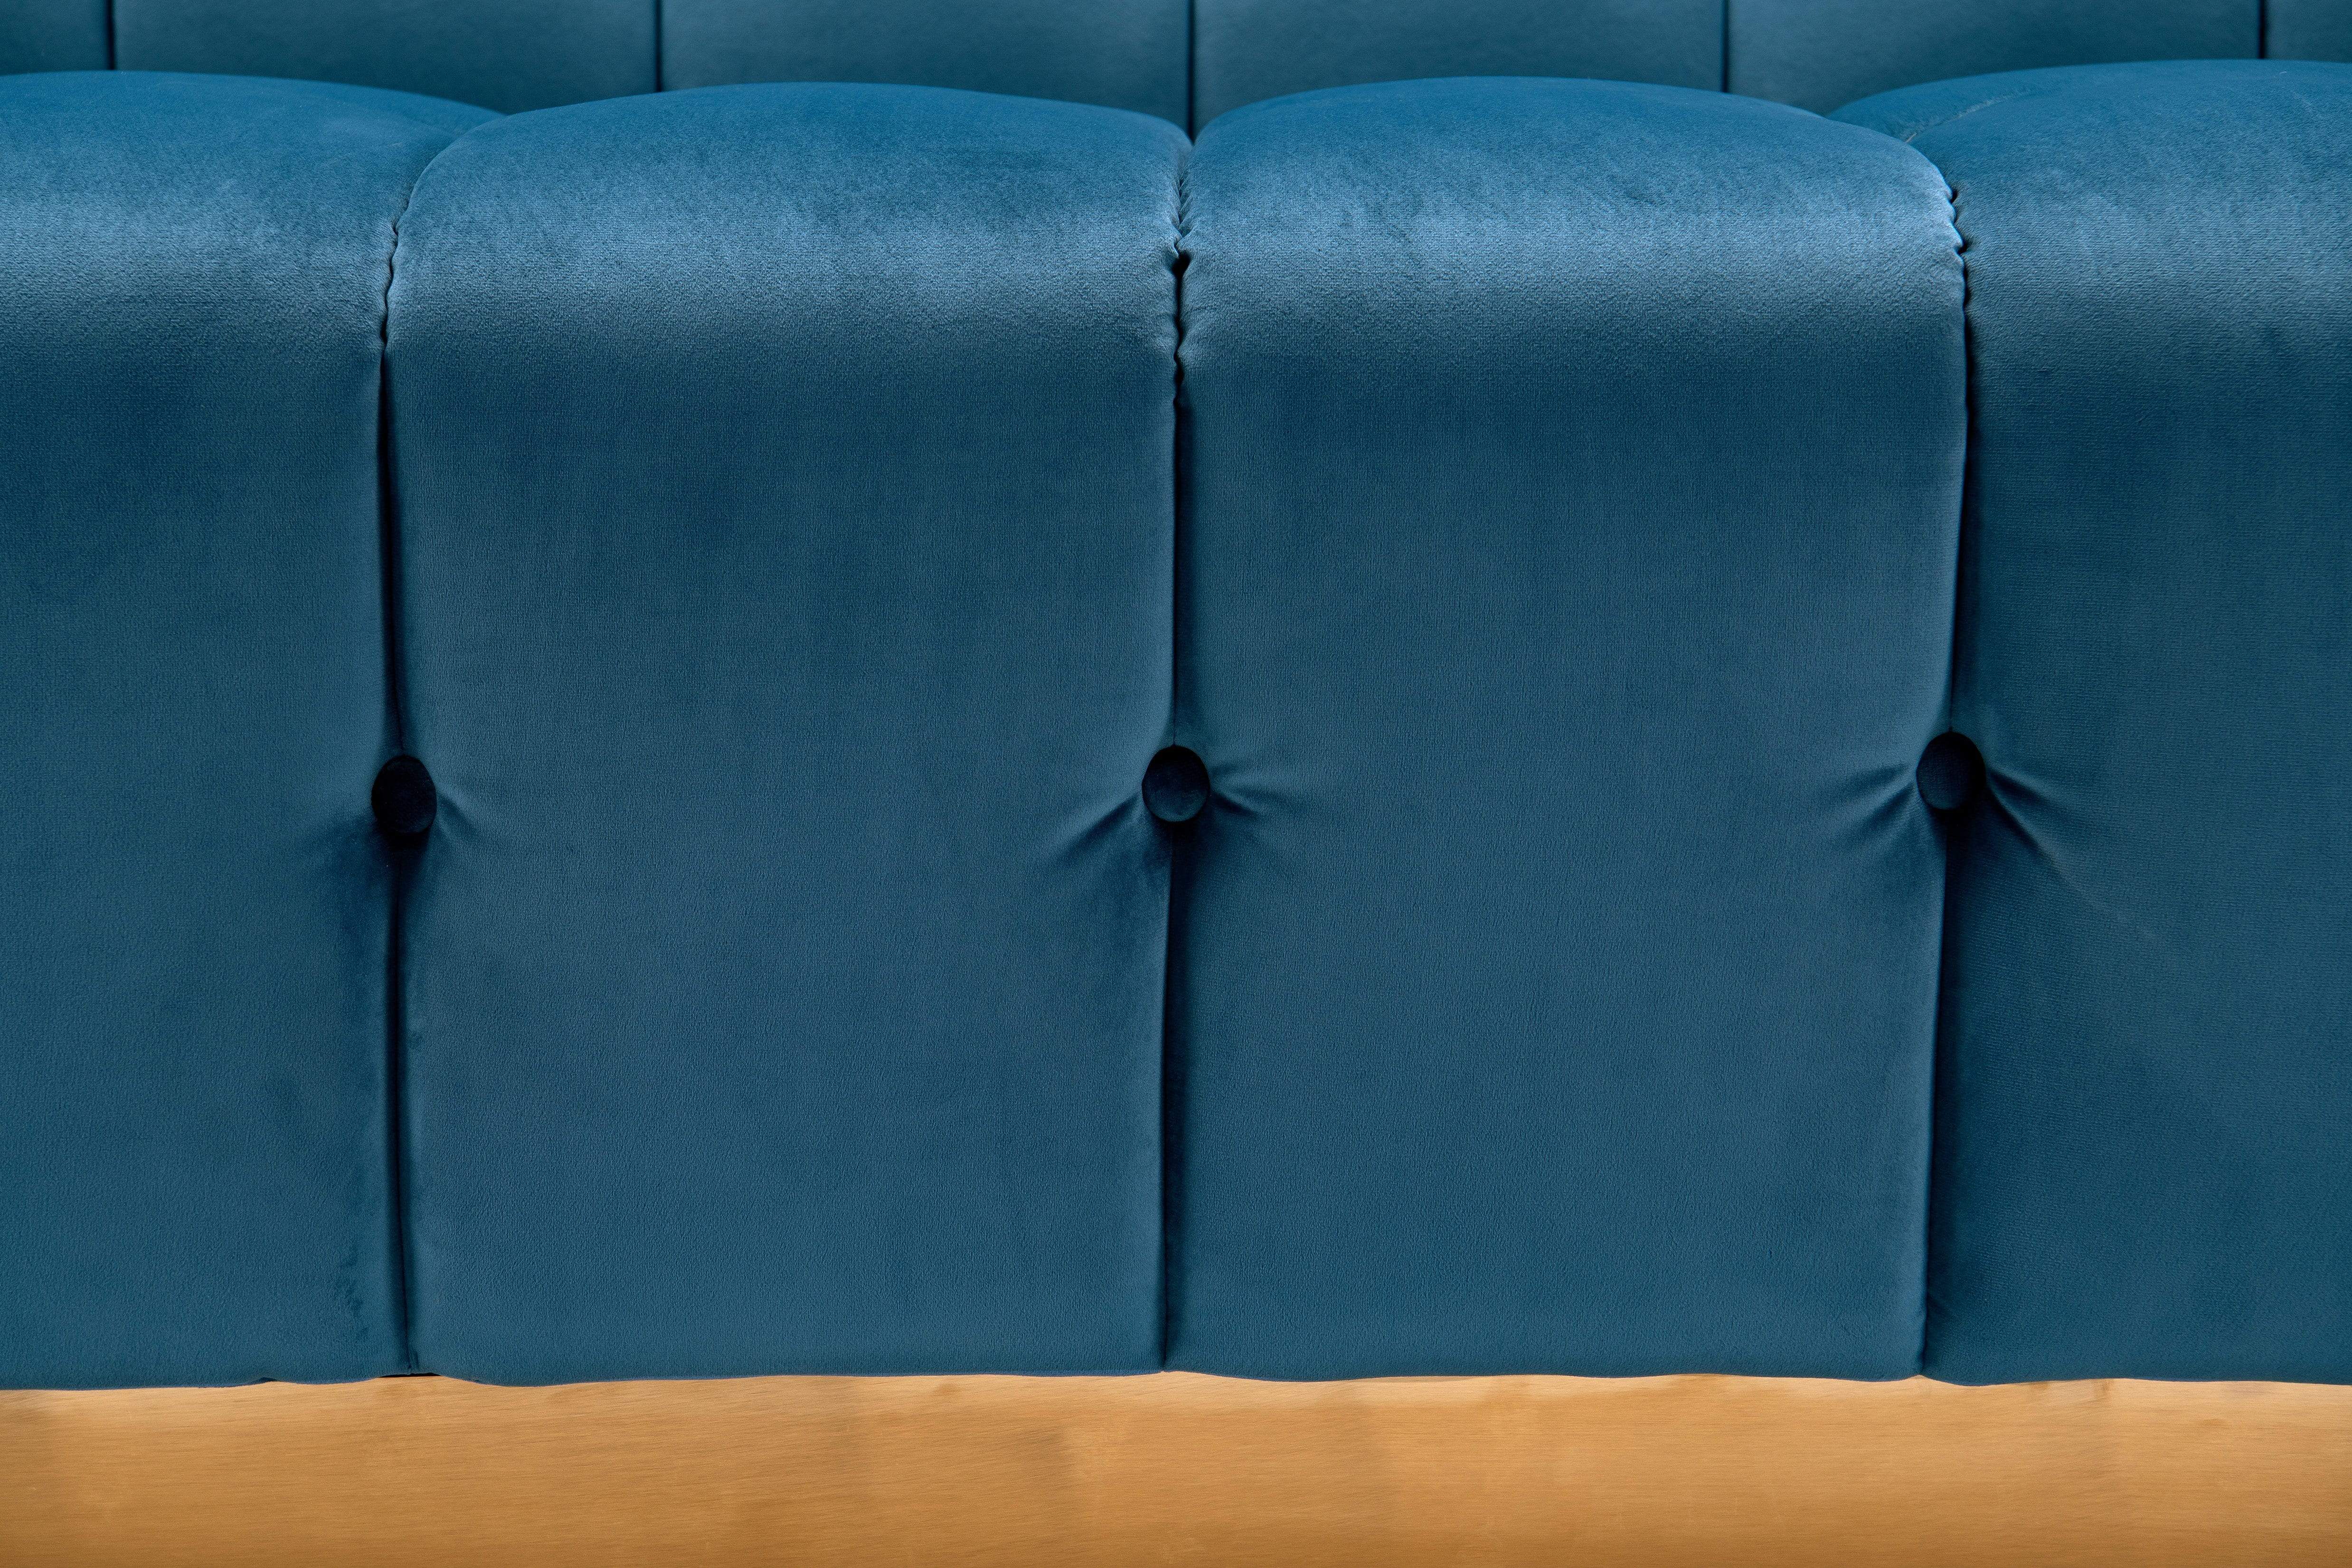 Aviv Velvet Sofa Button Tufted Upholstered Design